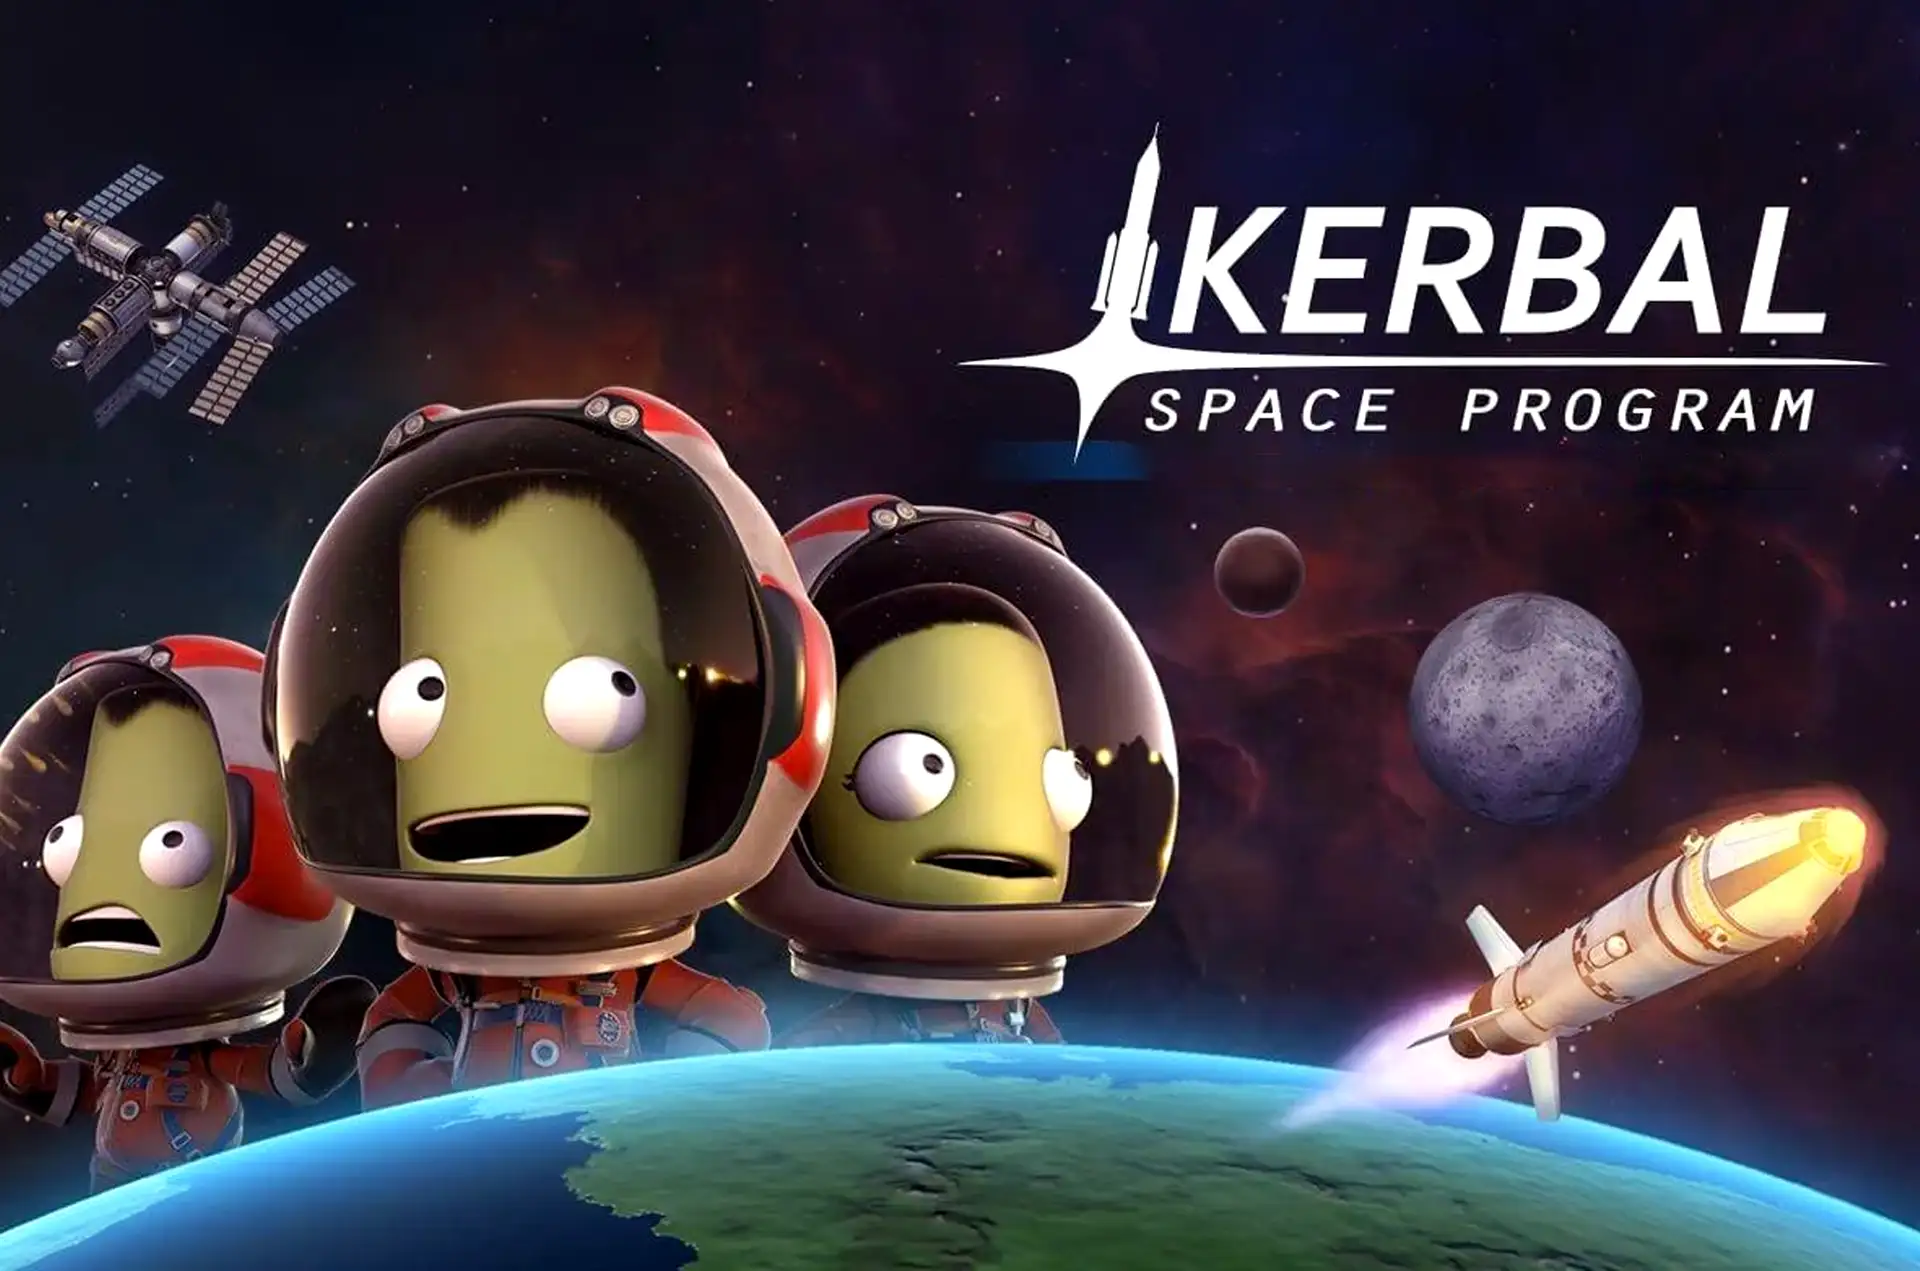 Featuring Kerbal Space Program 2